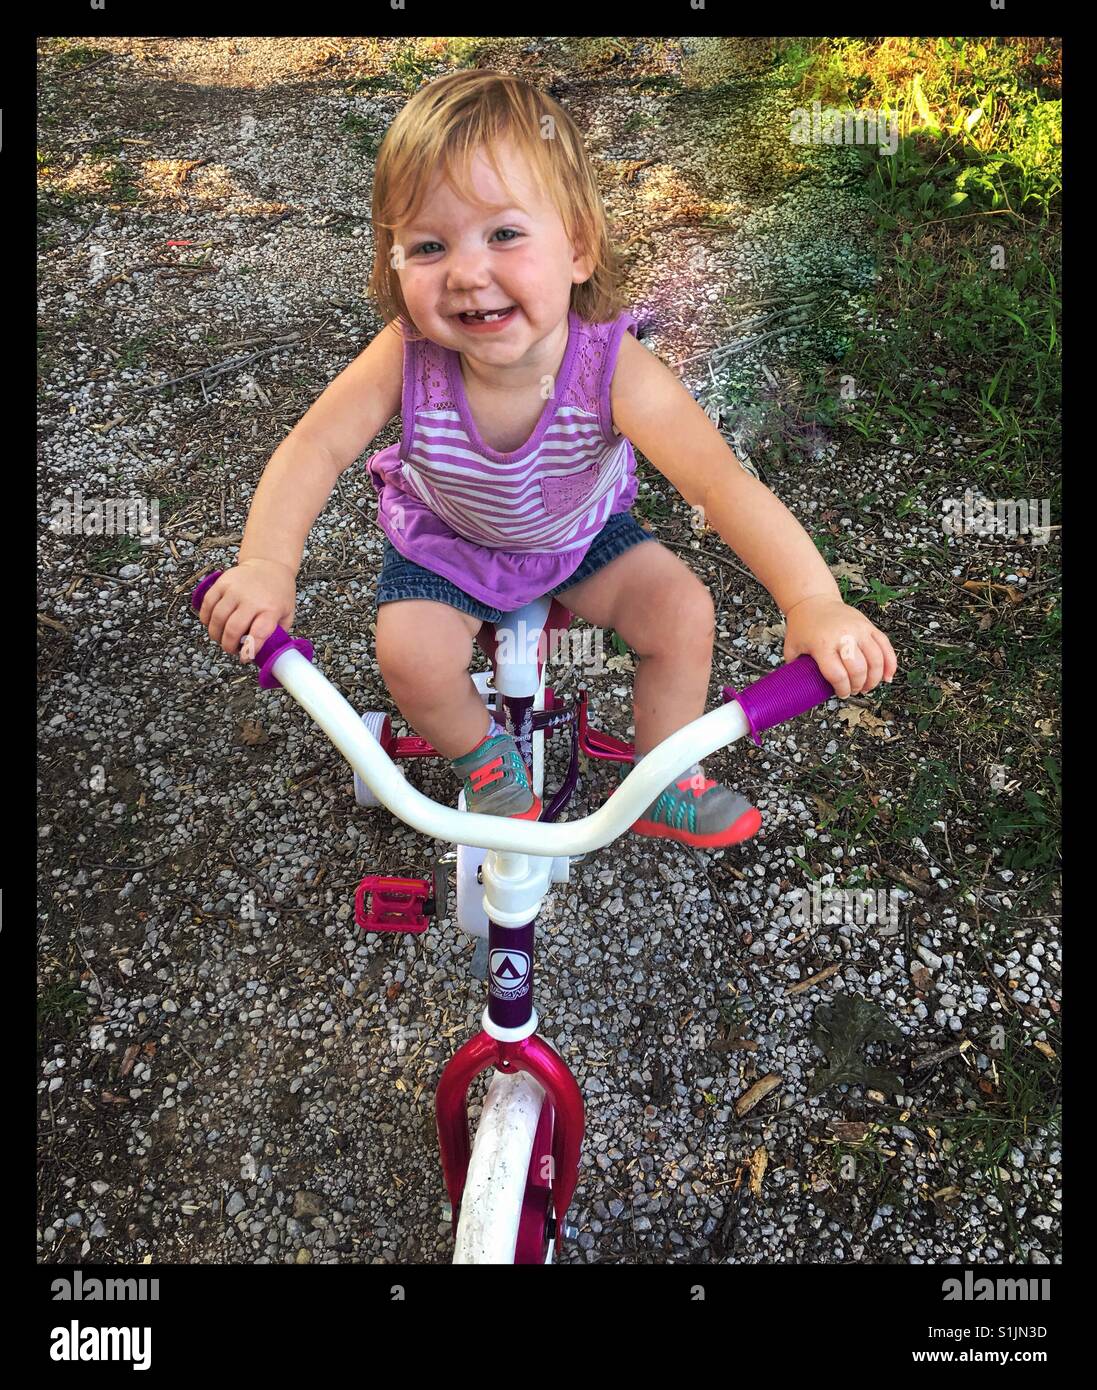 Glückliches kleine Mädchen klettert auf ihre Schwestern-Fahrrad, das viel zu groß für sie ist. Stockfoto